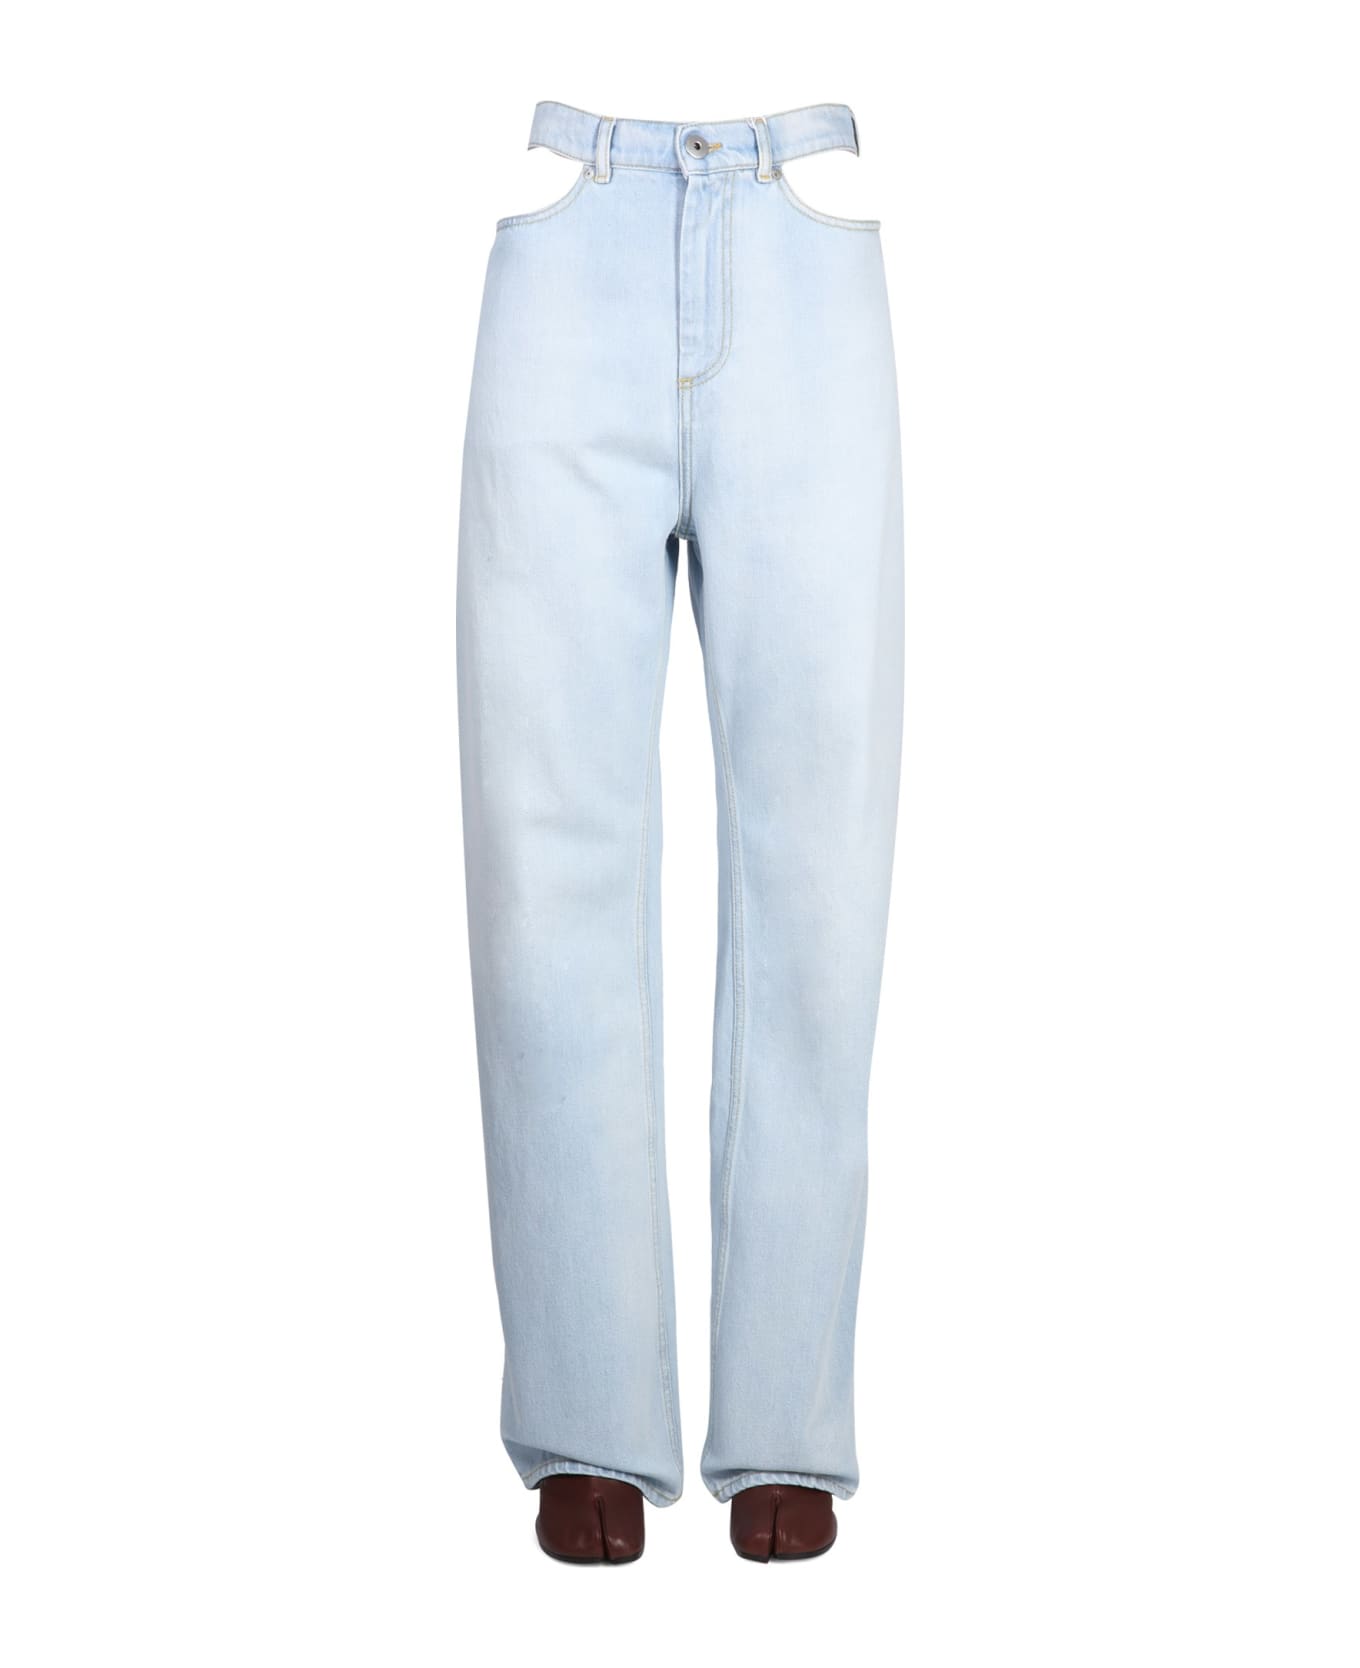 Maison Margiela Jeans With Cut Out Details - Azzurro